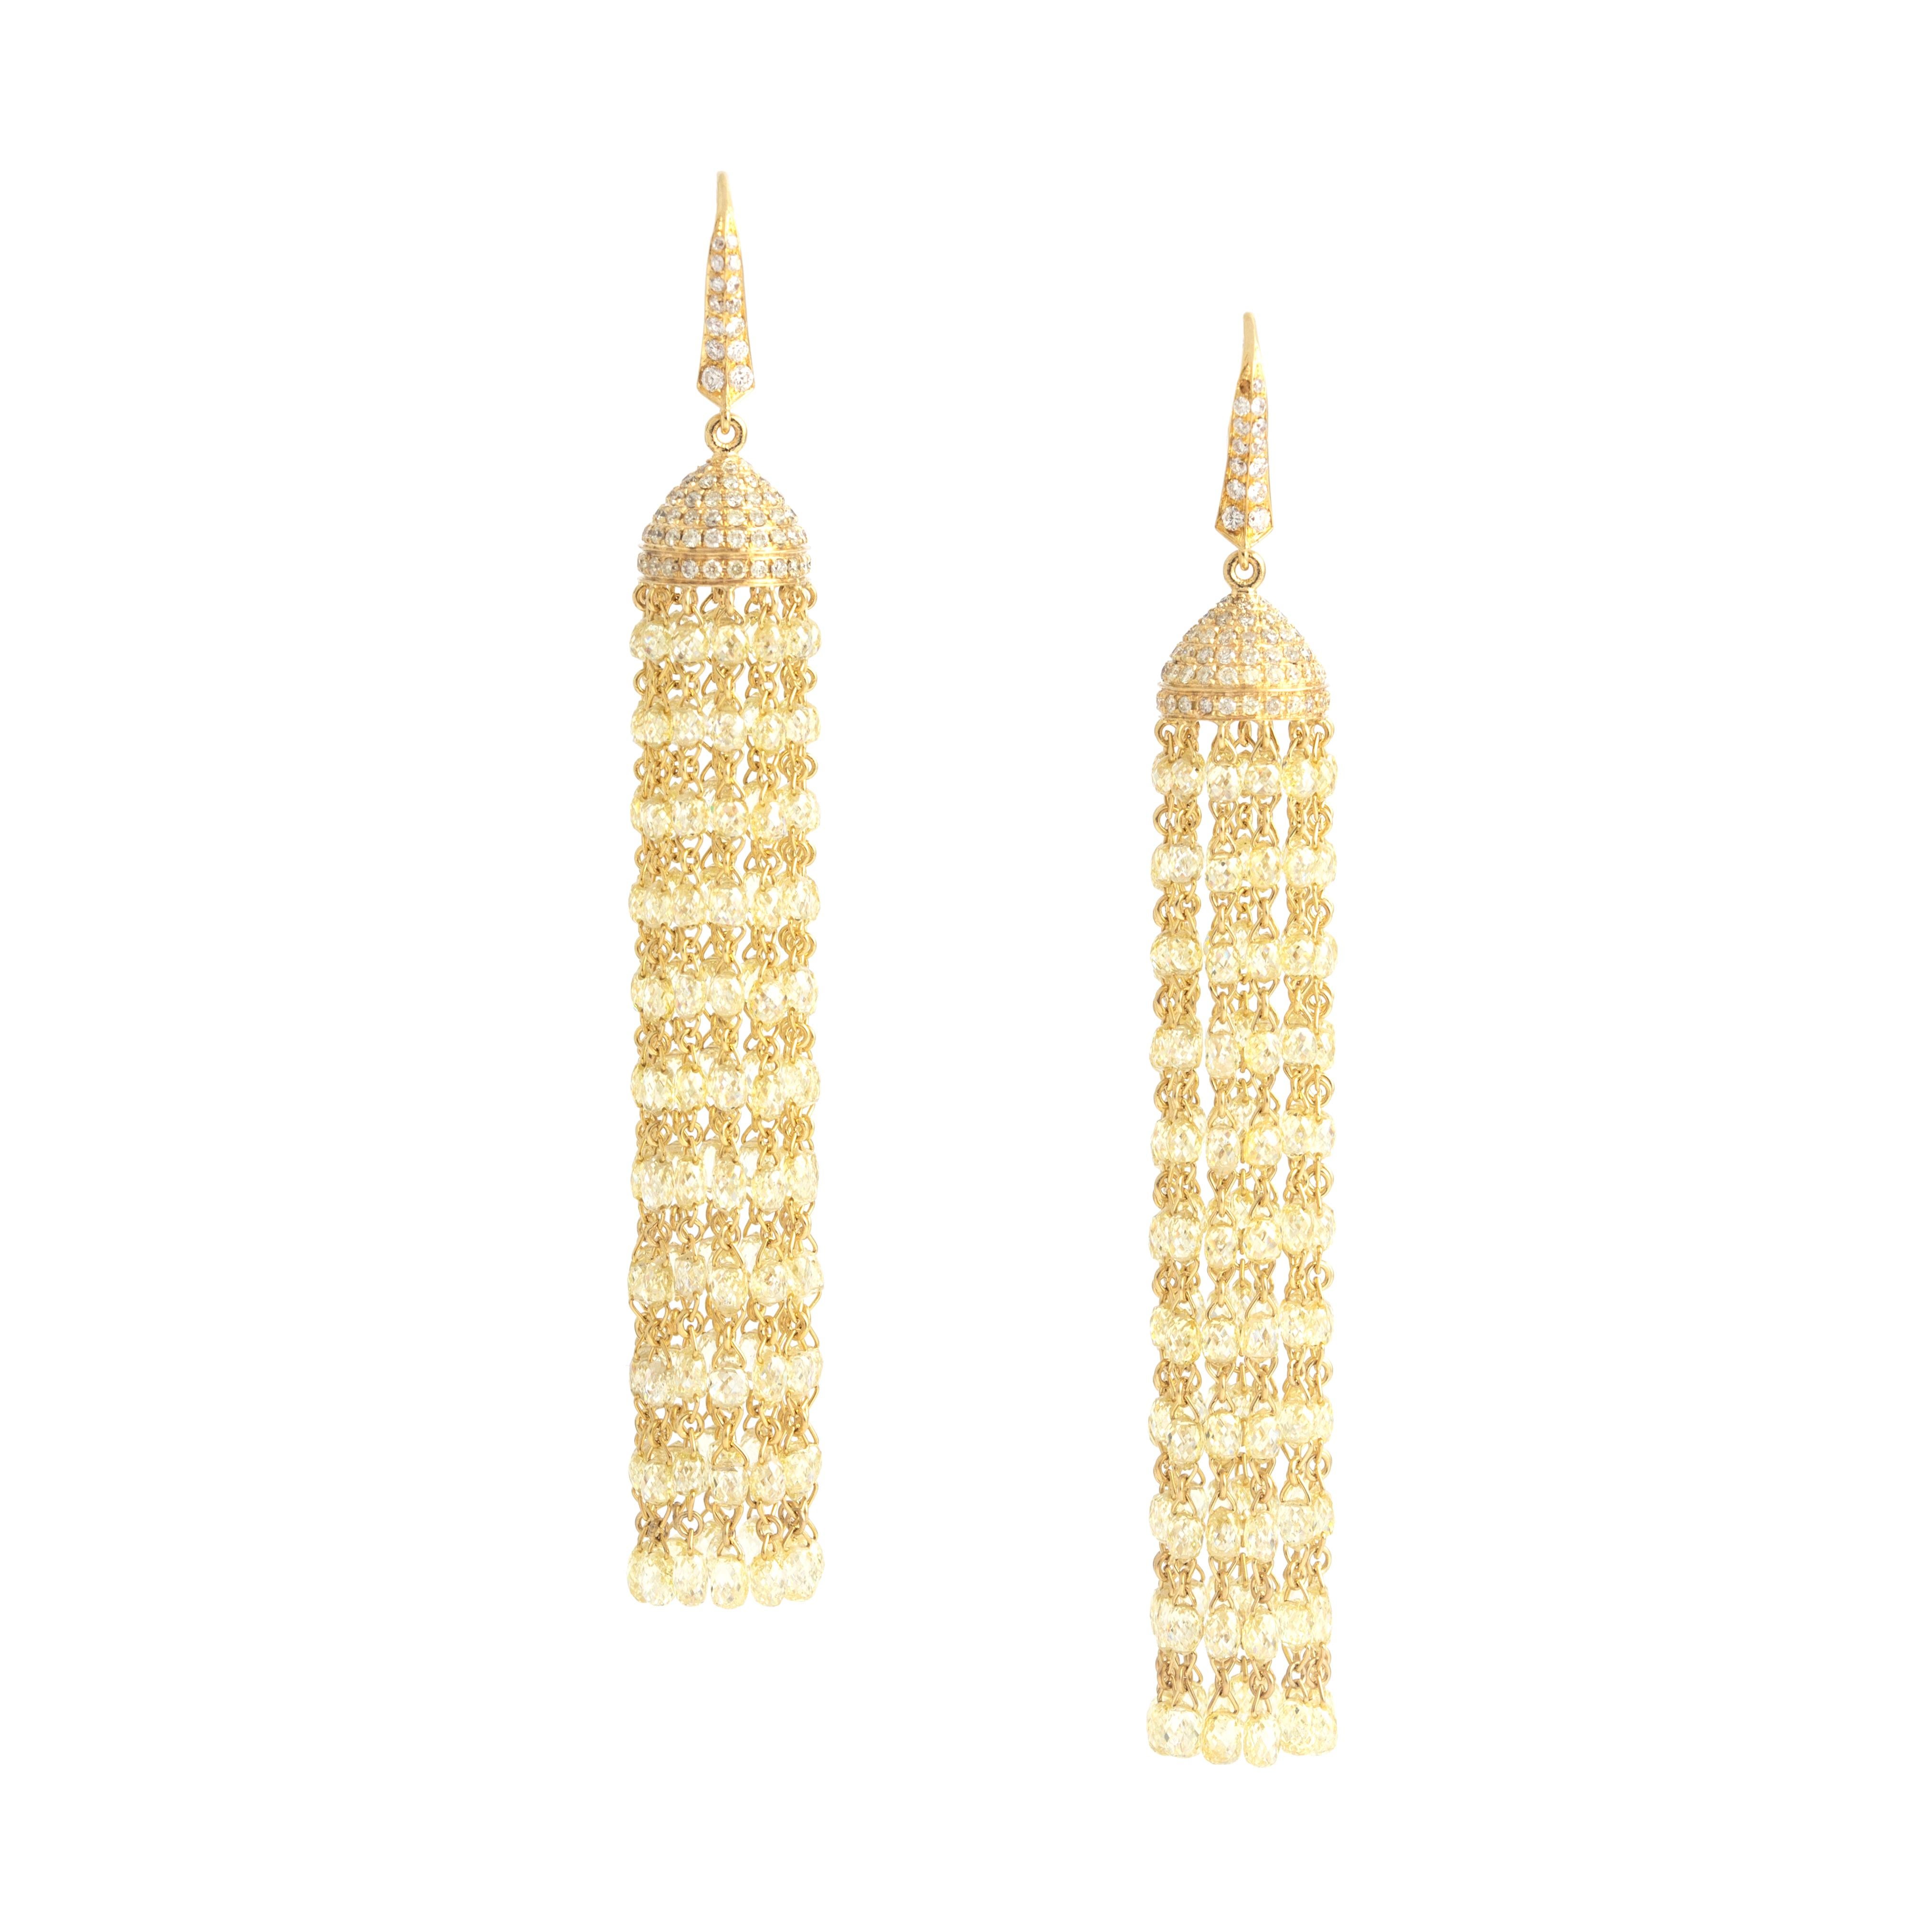 Briolette Cut Diamond Yellow Gold 18K Chandelier Earrings For Sale